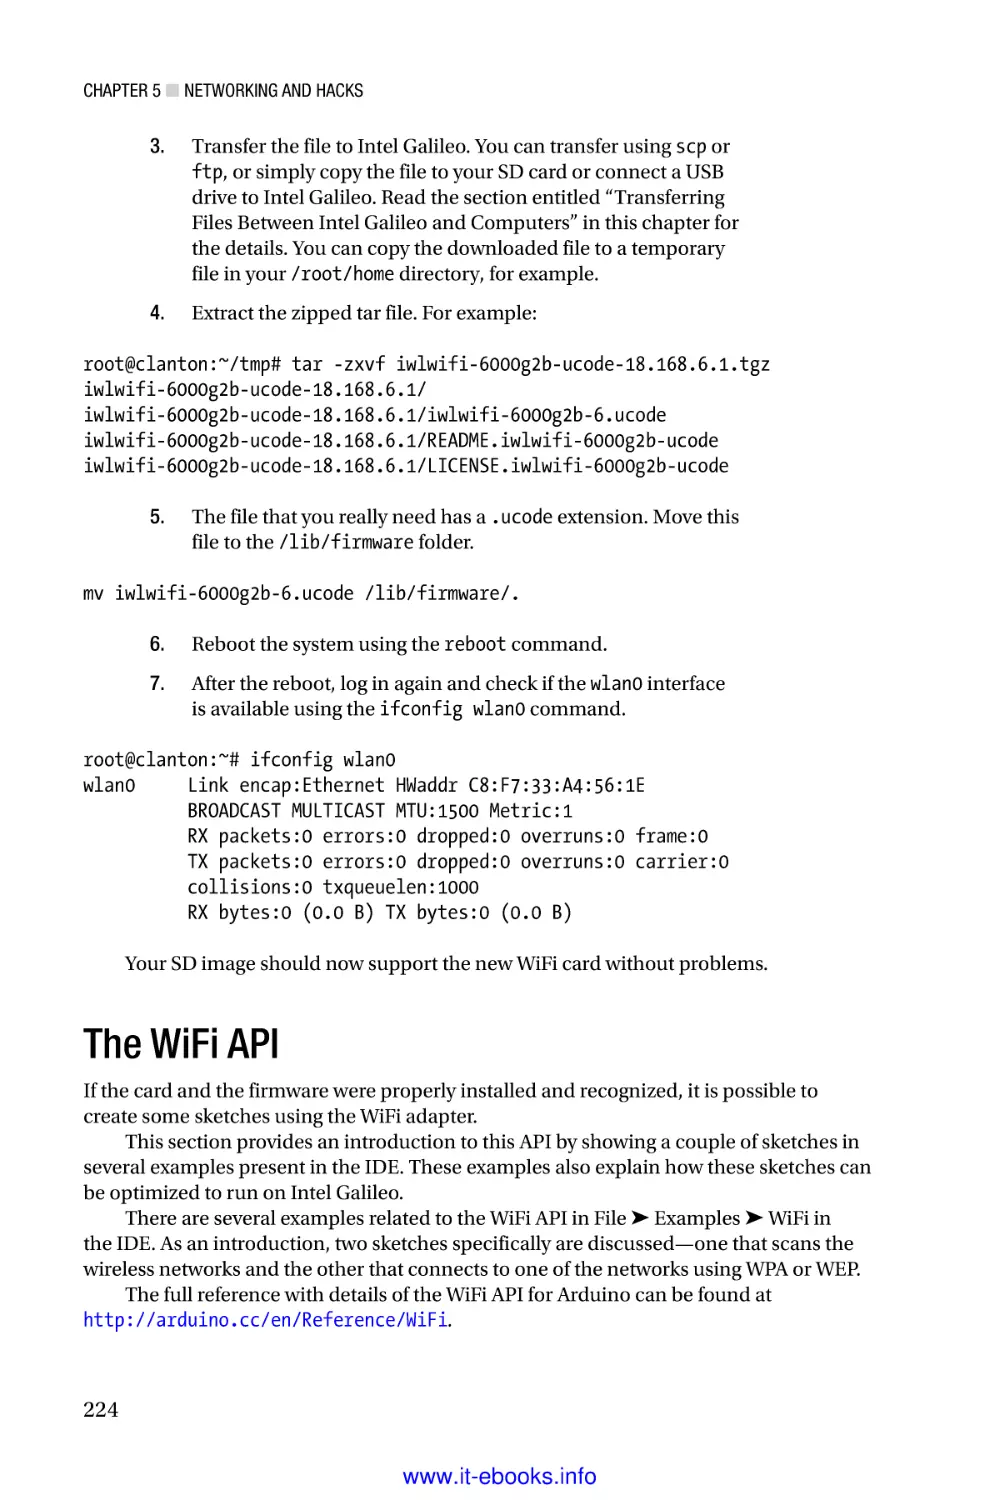 The WiFi API